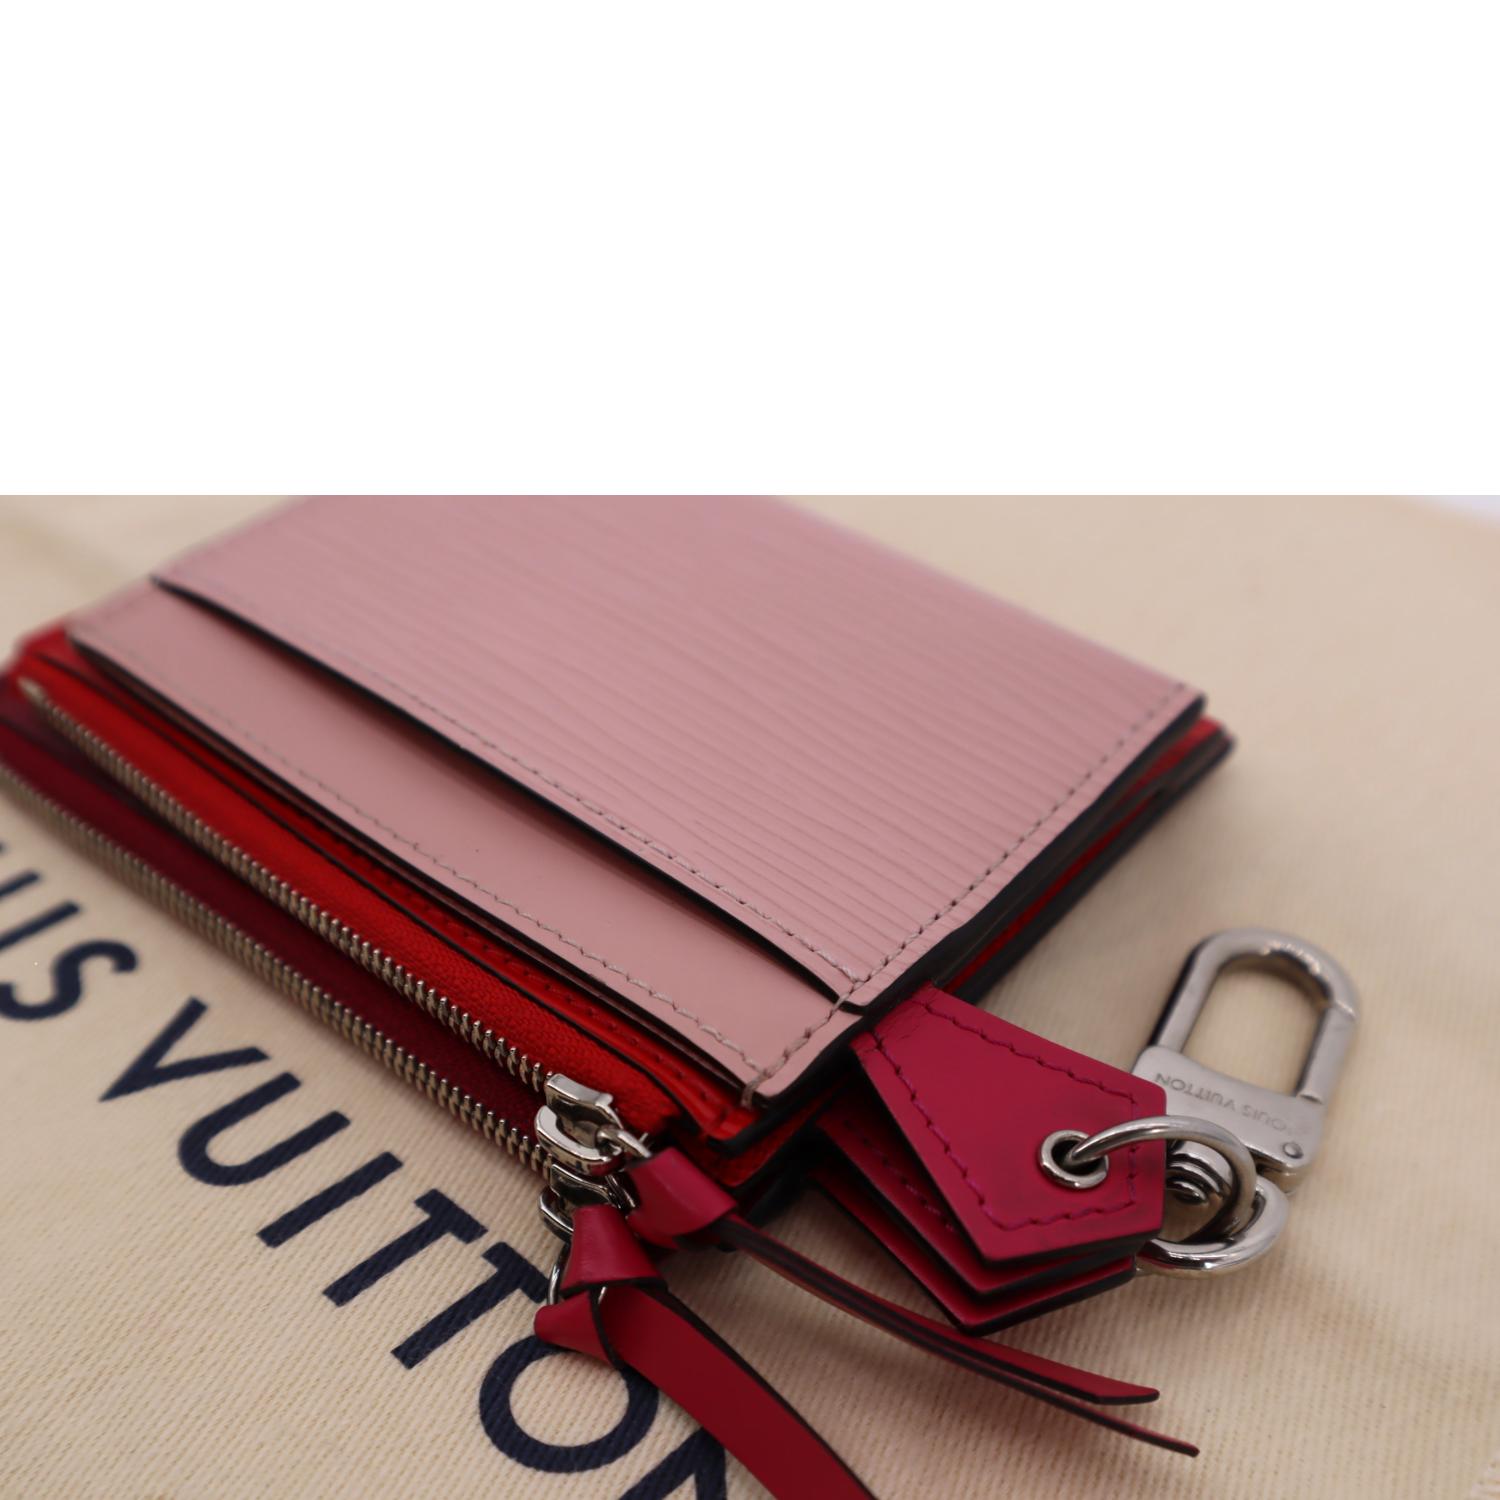 Louis Vuitton Rose Ballerine/Black Epi Leather Trunk Multicartes Wallet  Louis Vuitton